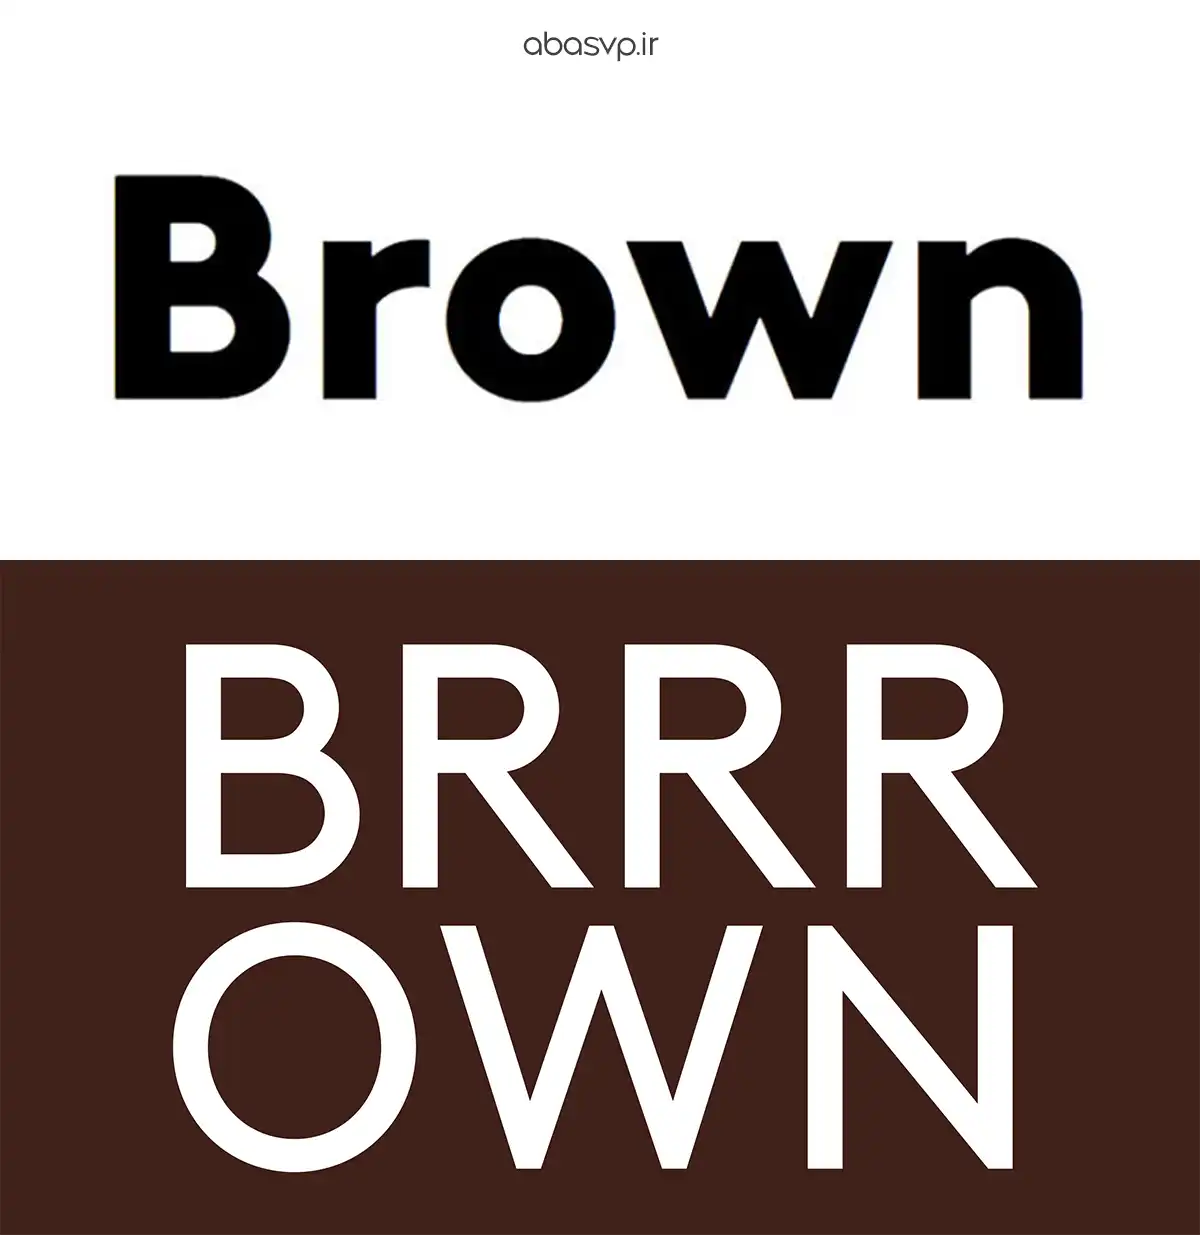 دانلود فونت گرافیکی The Brown